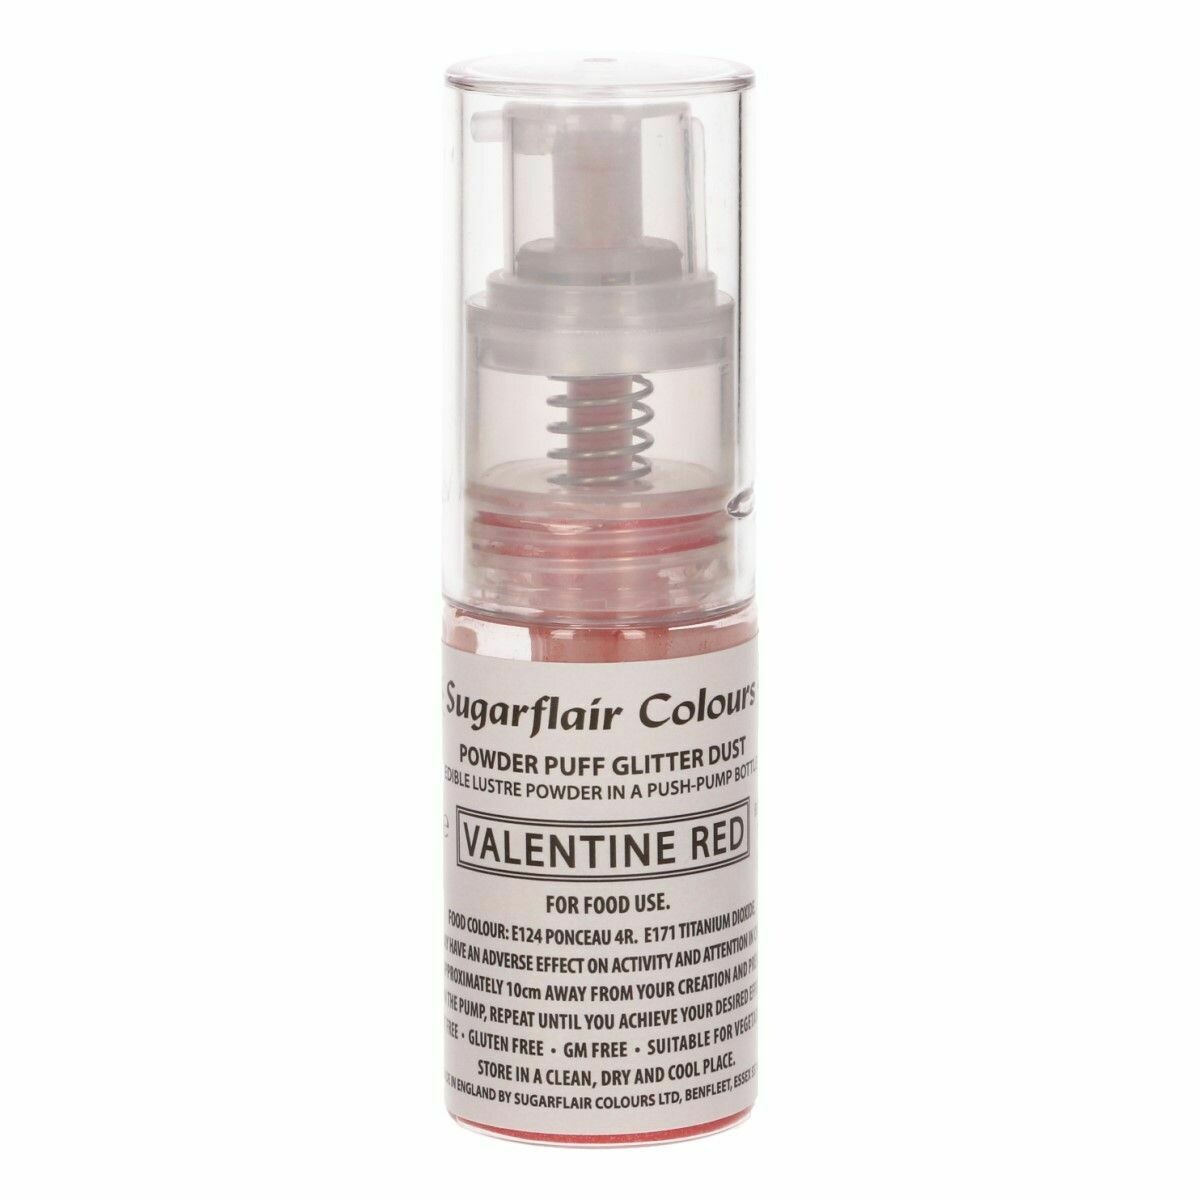 Sugarflair Powder Puff Glitter Dust Pump Spray -VALENTINE RED 30ml - Βρώσιμο Γκλίτερ σε σπρέι - Κόκκινο